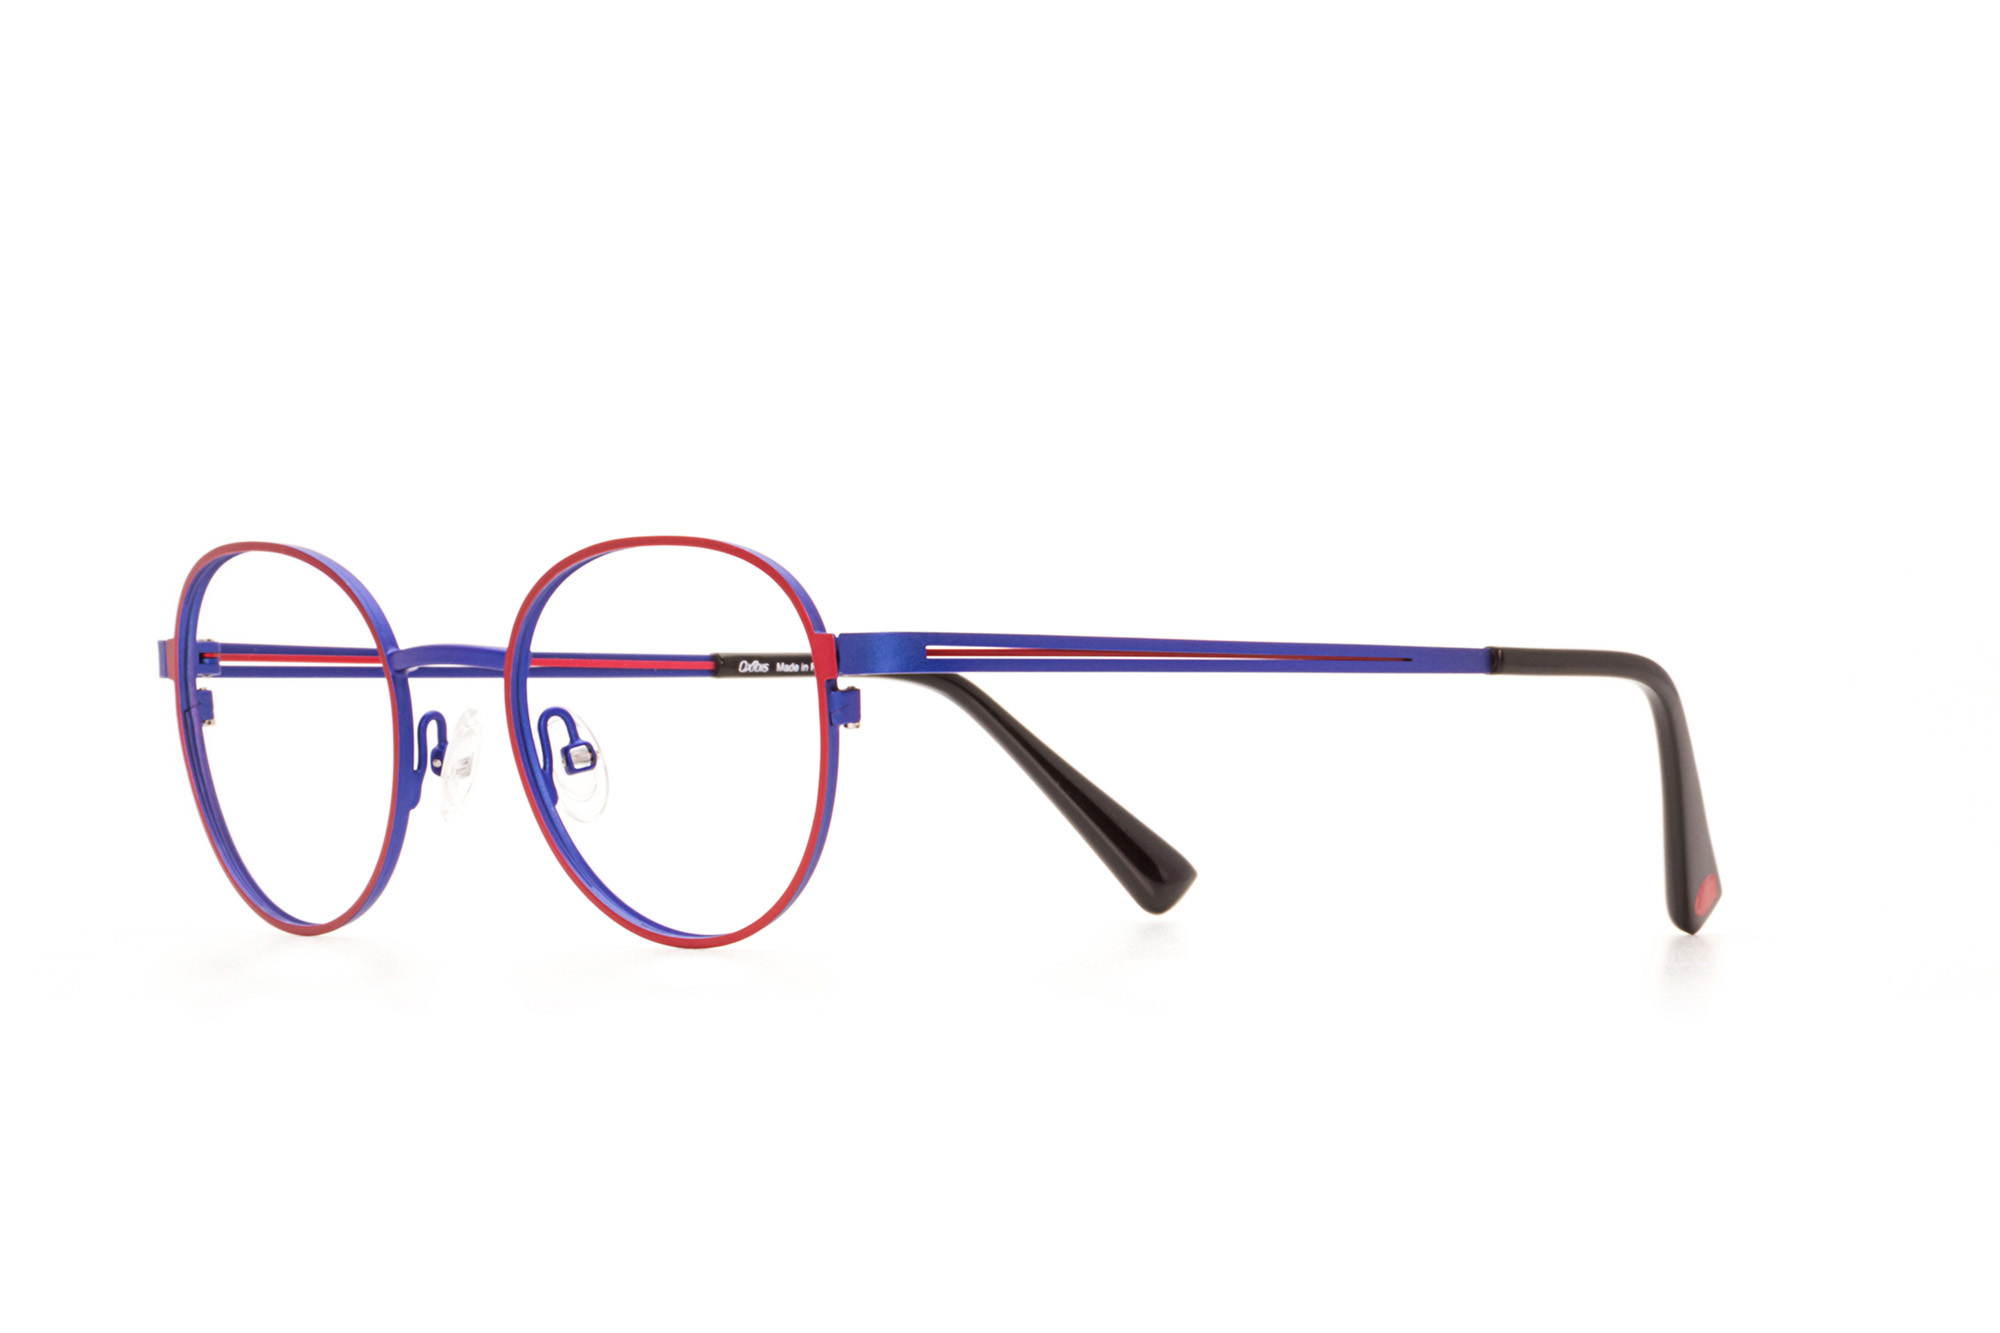 Kullanıma hazır optik tarzda işlenmiş camları ve optik uyumlu çerçevesiyle Oxibis S.Avana SA1C5 küçük ekartman mavi ve kırmızı renkli yuvarlak model unisex gözlüğü optisyen veya gözlükçülerin sunacağı numarasız veya numaralı cam özelleştirmeleriyle size en yakın gözlükçüden satın alabilirsiniz.